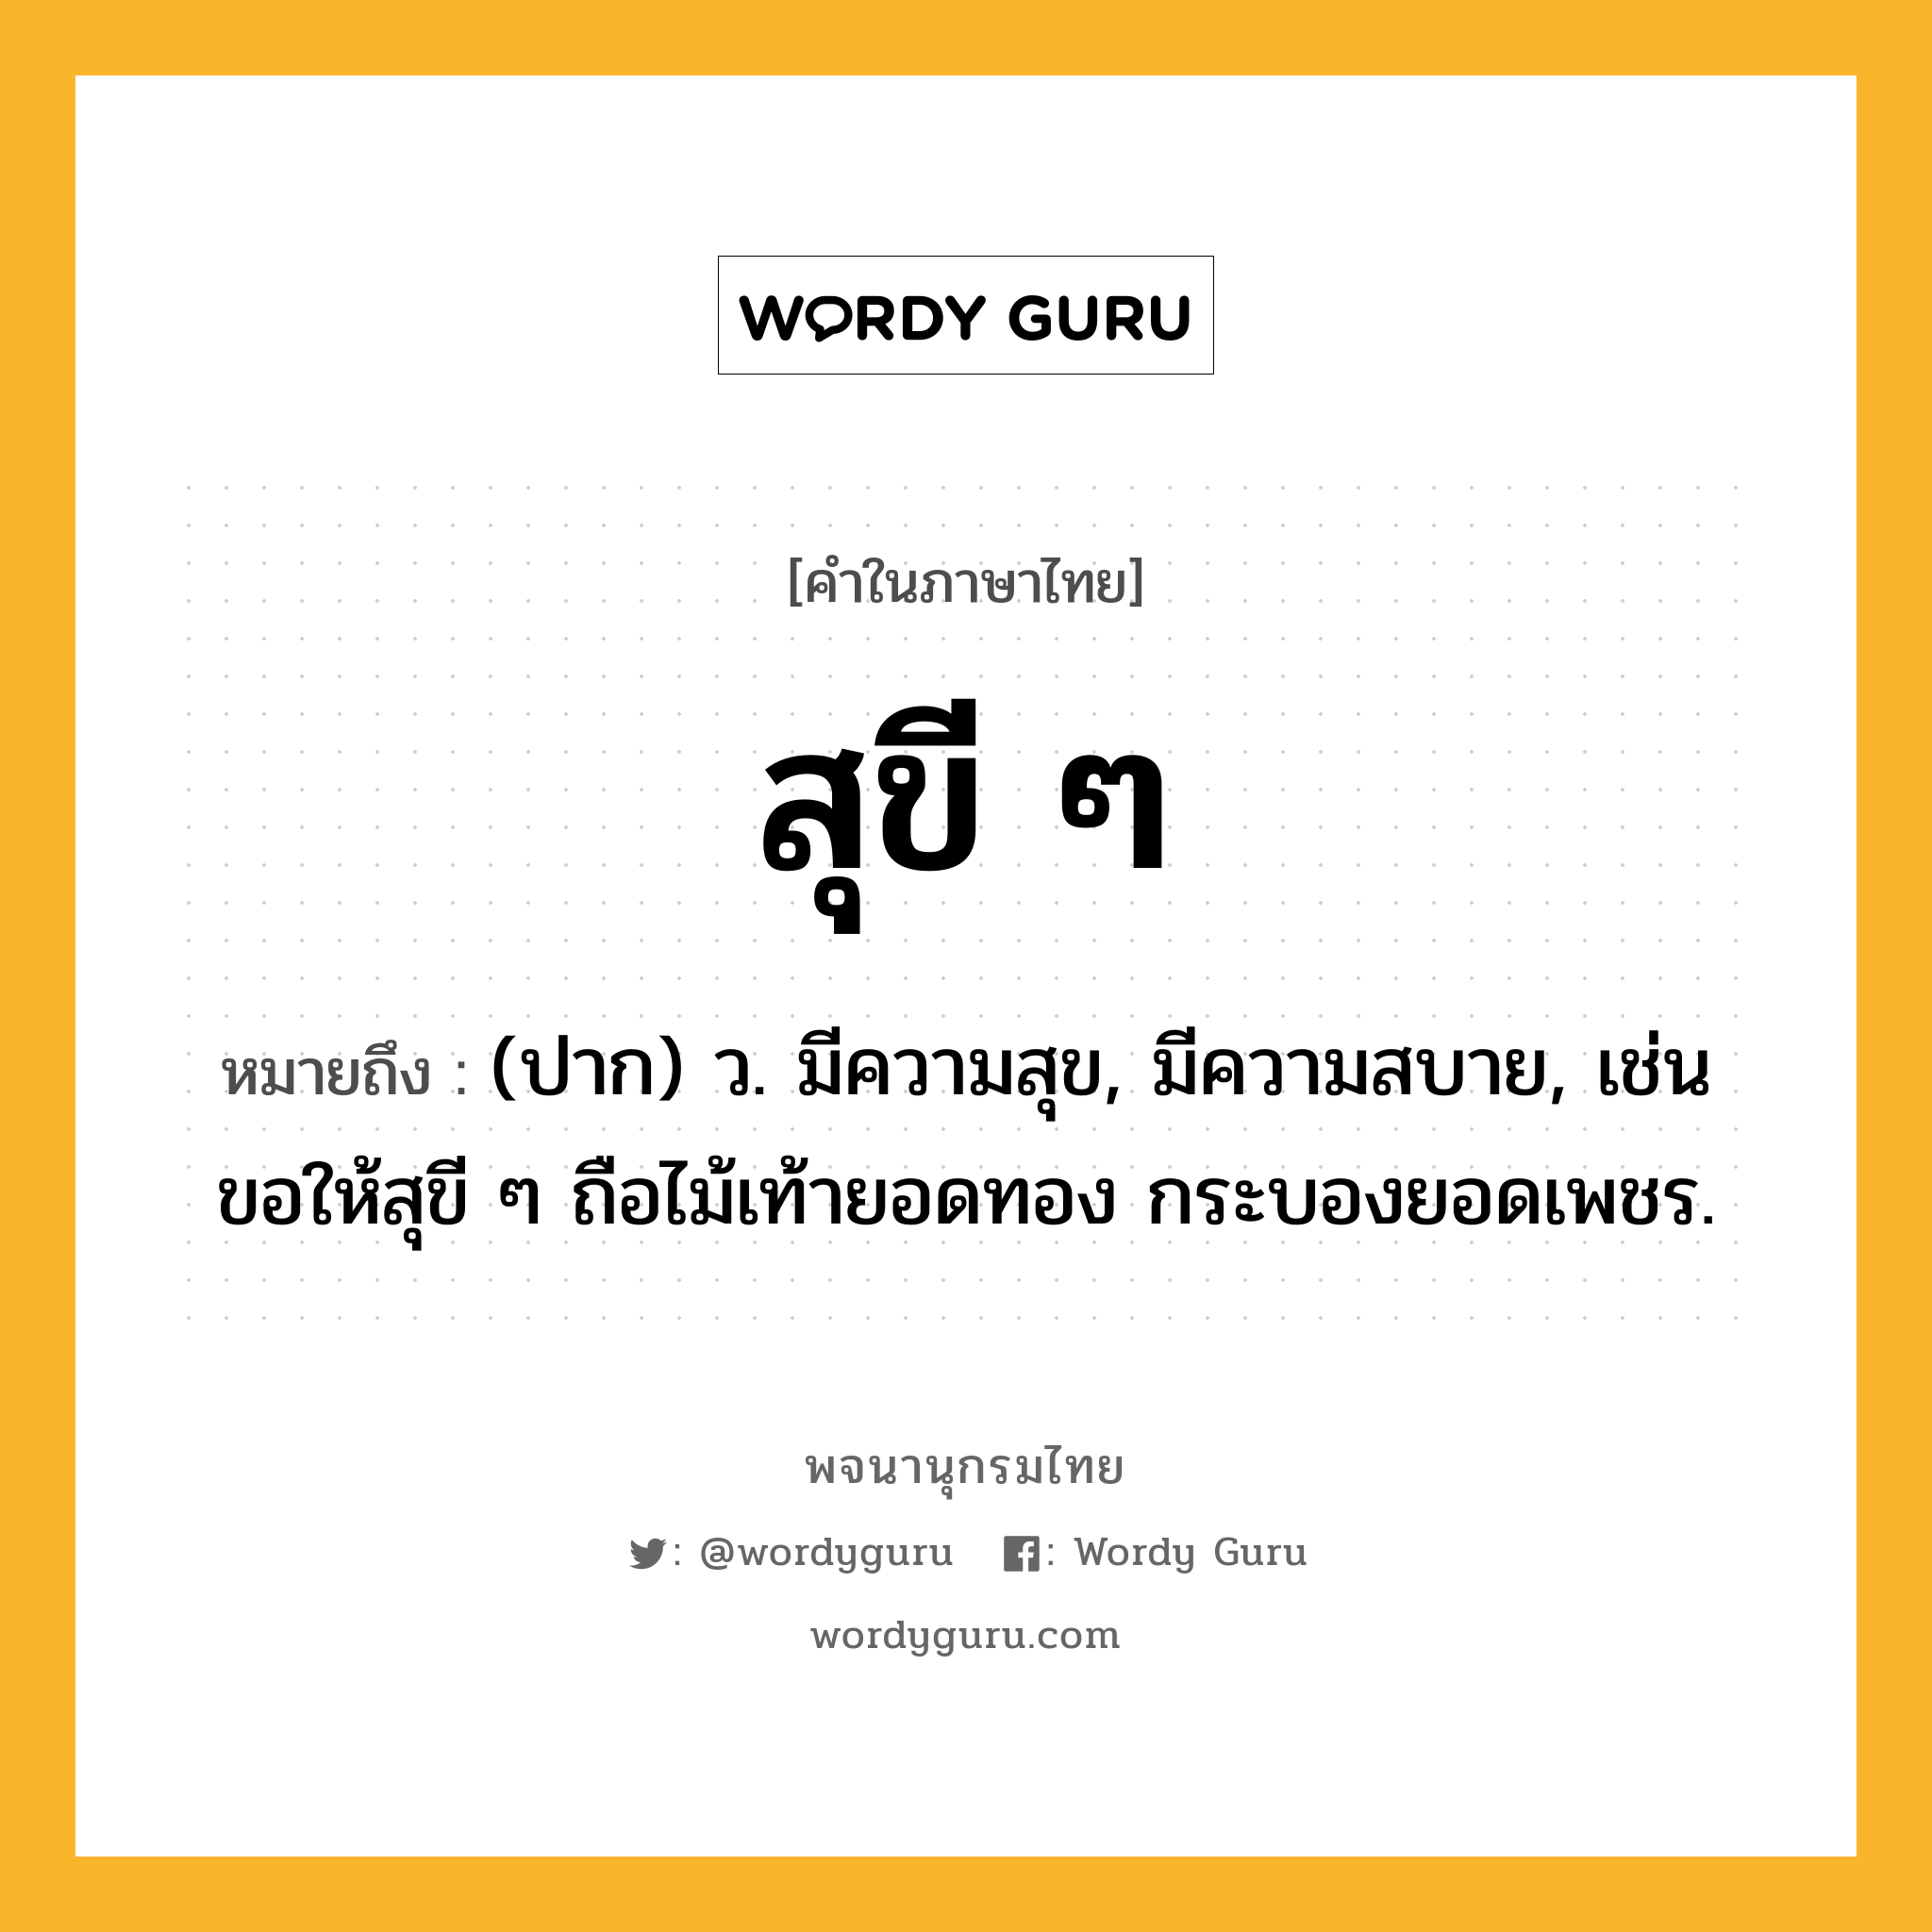 สุขี ๆ หมายถึงอะไร?, คำในภาษาไทย สุขี ๆ หมายถึง (ปาก) ว. มีความสุข, มีความสบาย, เช่น ขอให้สุขี ๆ ถือไม้เท้ายอดทอง กระบองยอดเพชร.